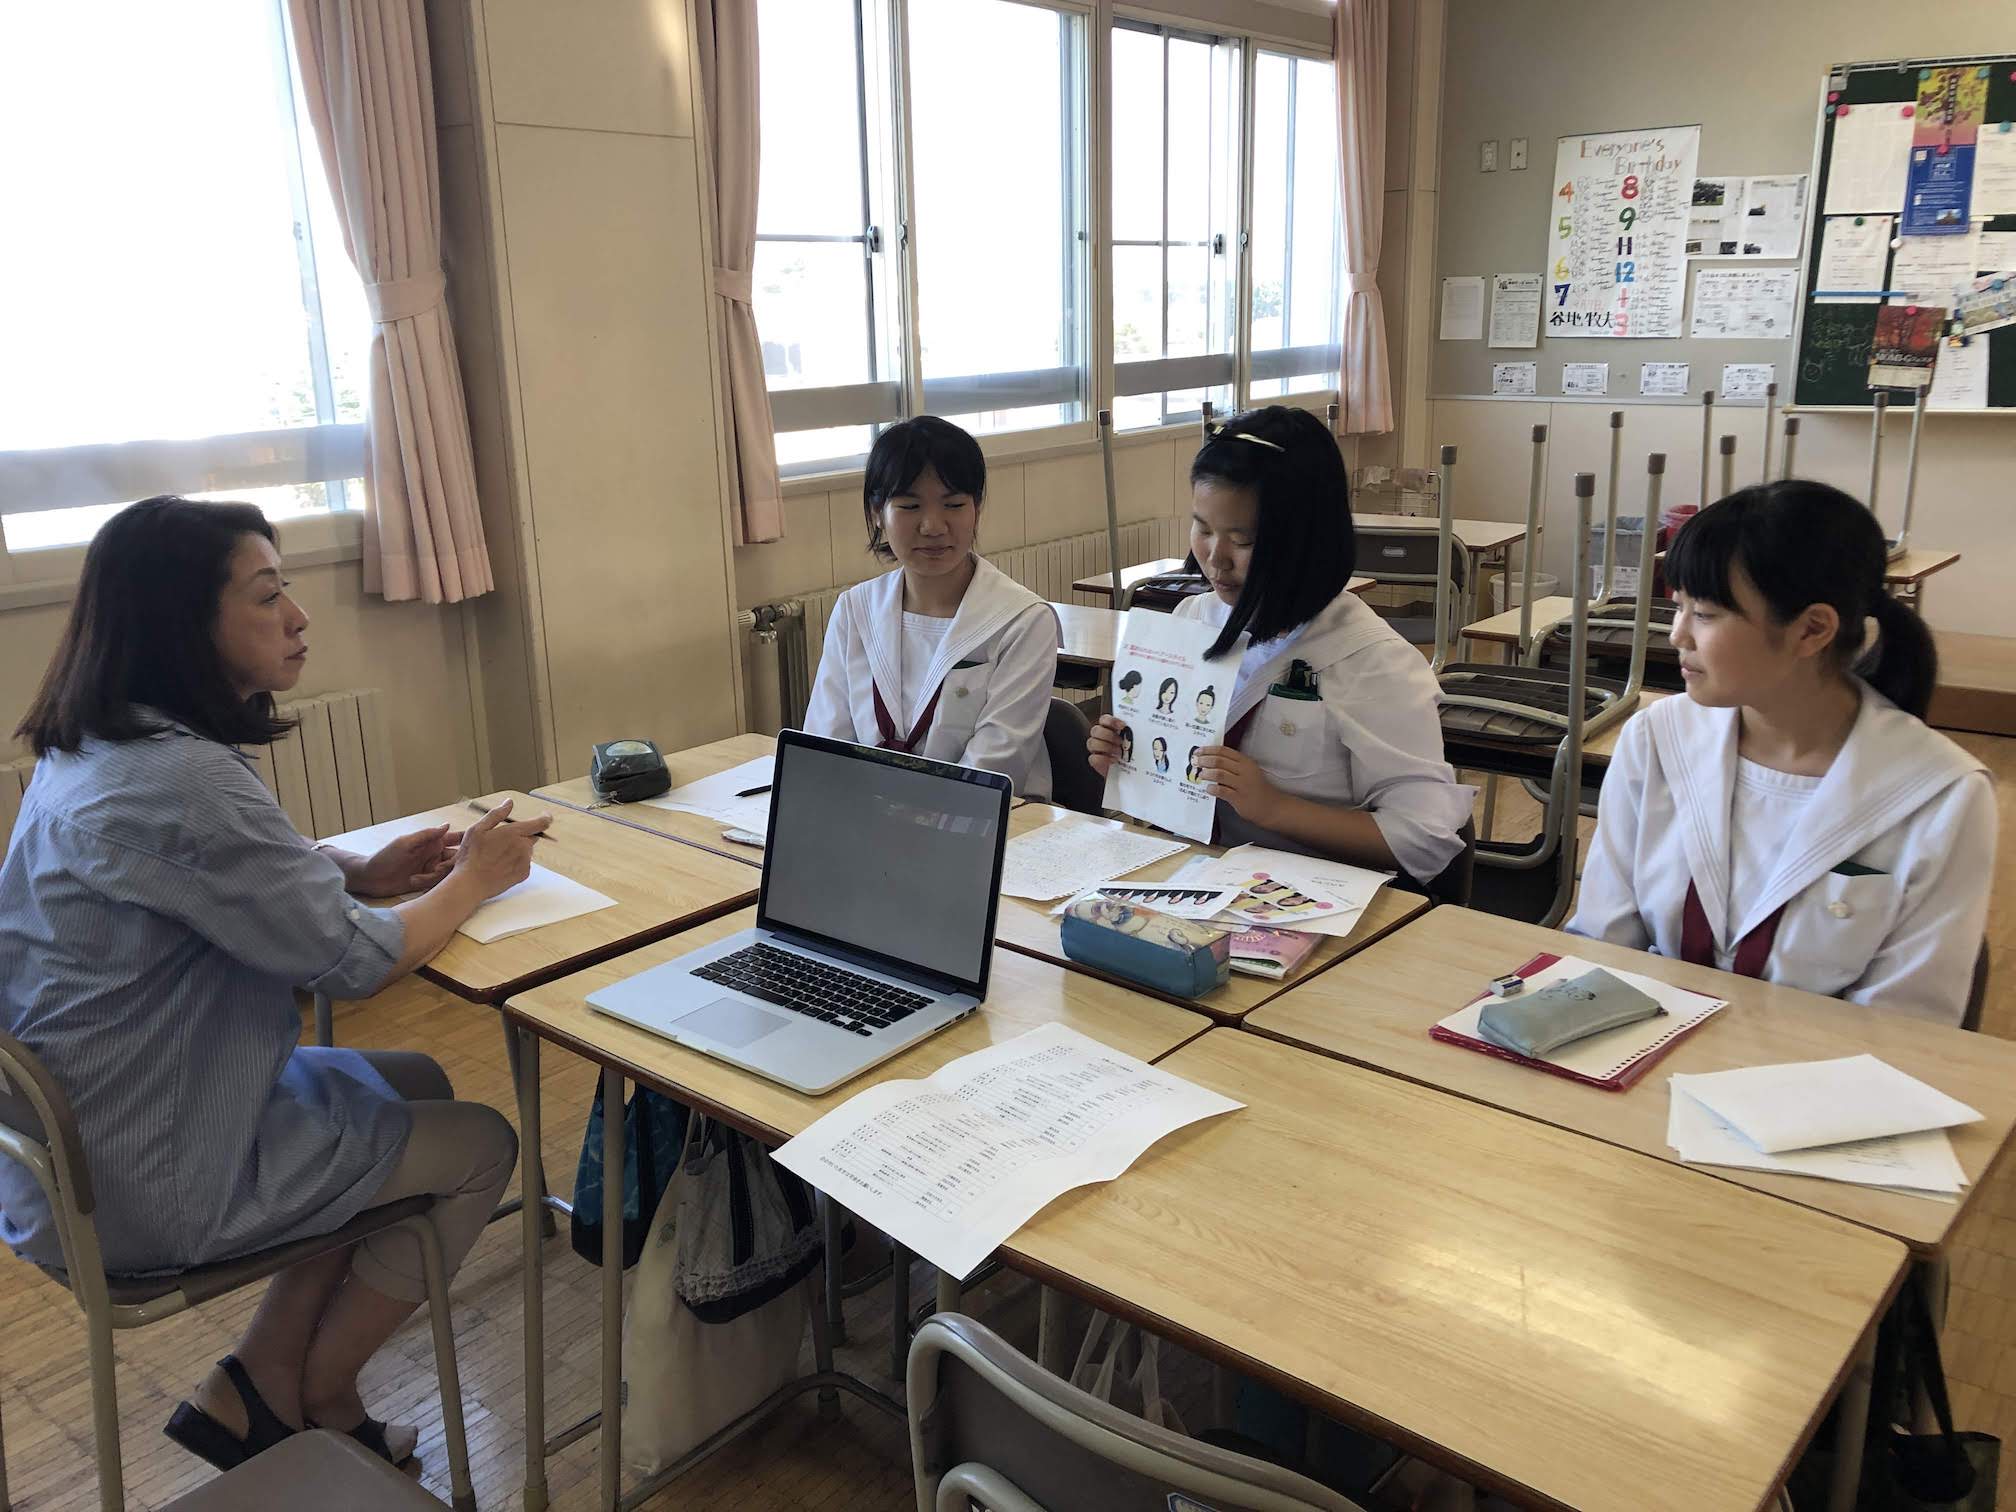 9月18日(水)遺愛女子中学校3年生の卒業レポート中間発表会が実施されました。